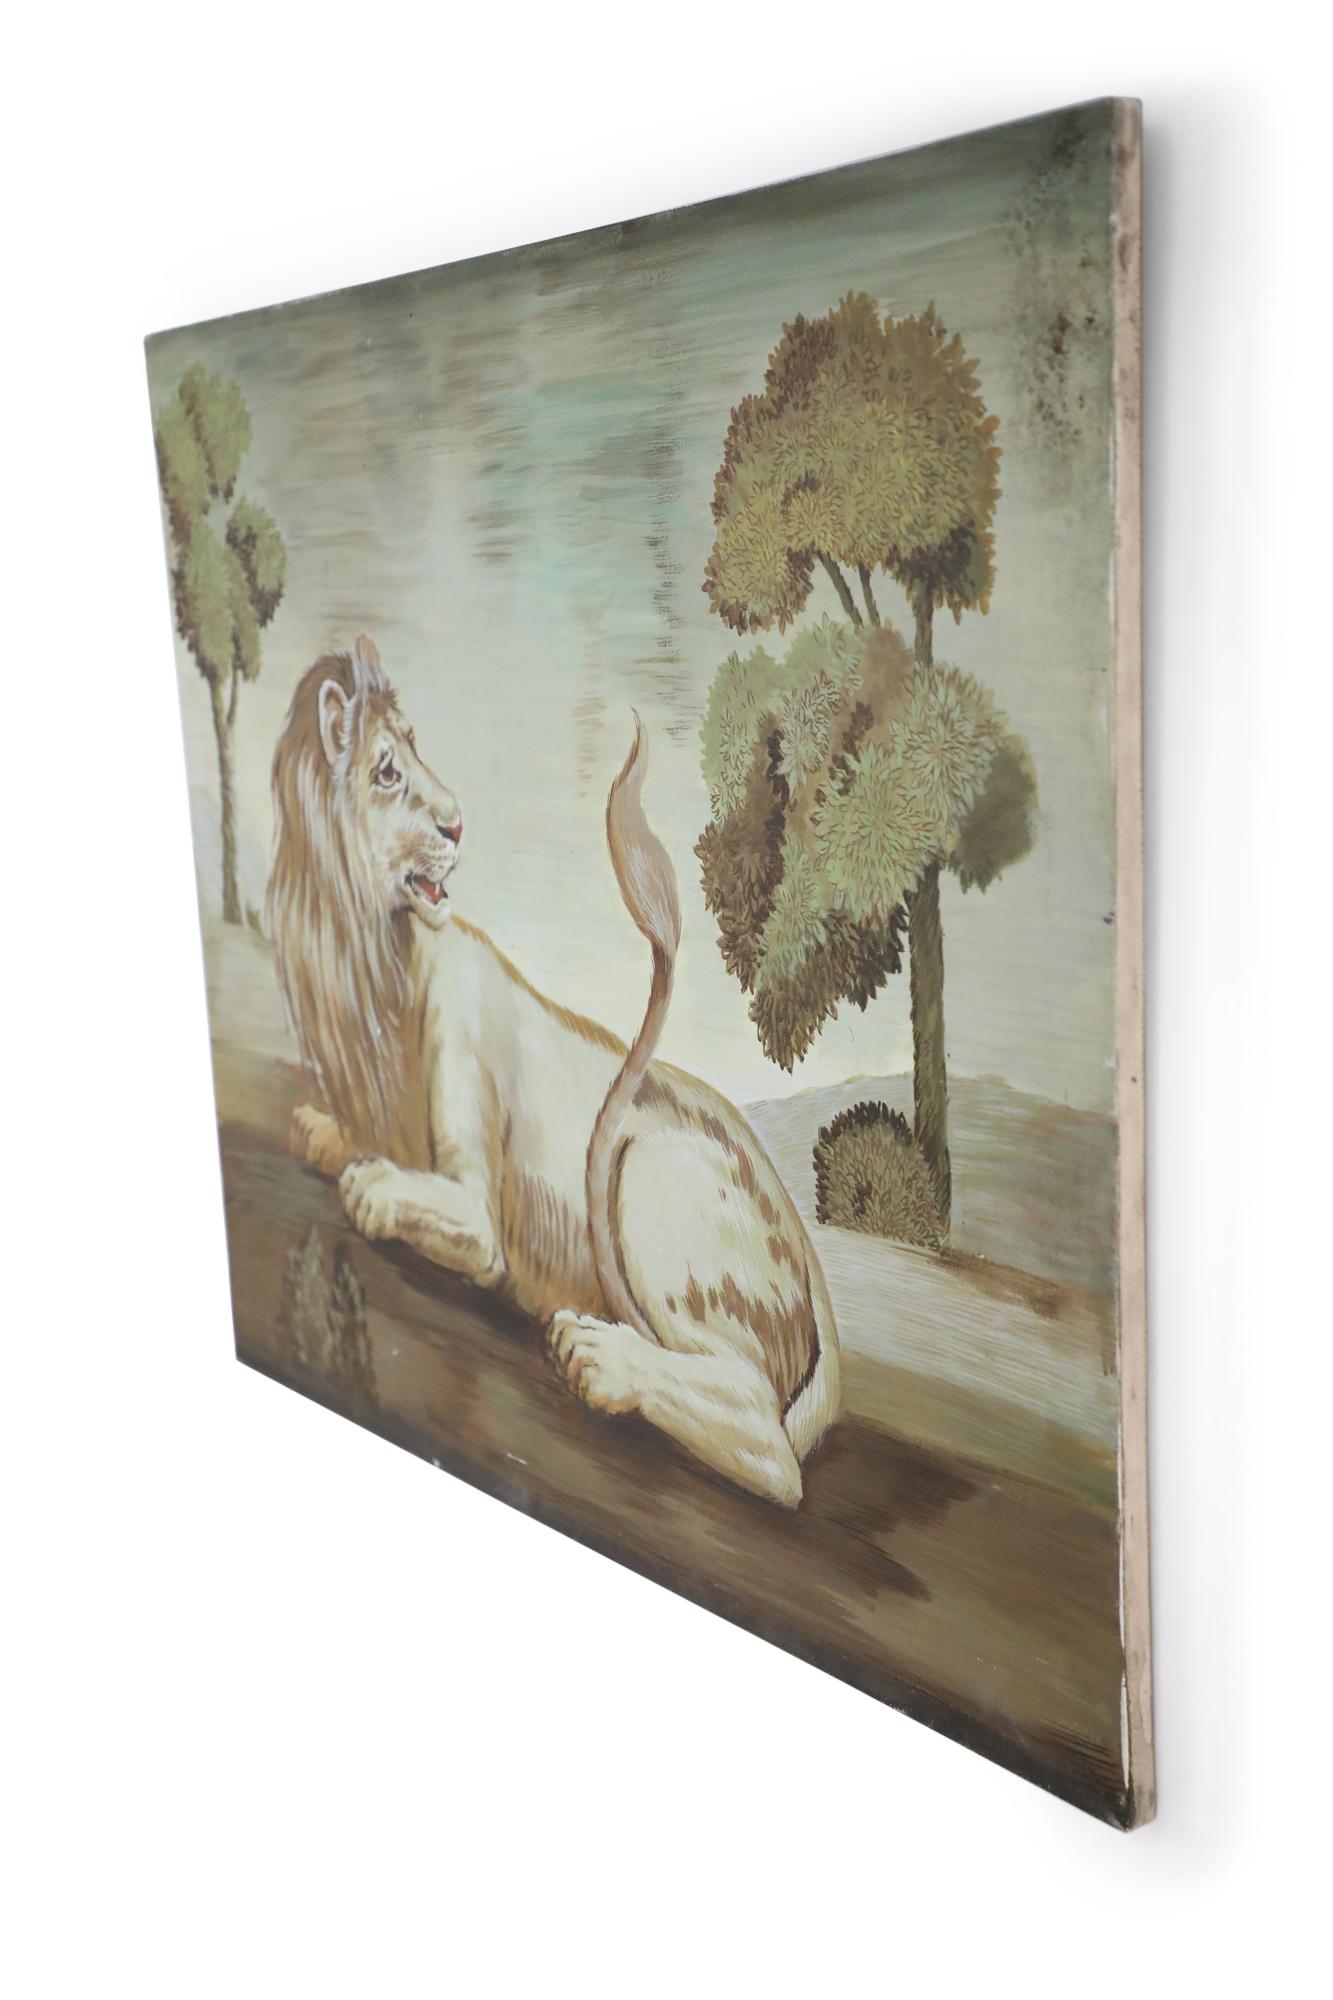 Portrait vintage (20e siècle) d'un lion couché et regardant sa queue dans un champ peuplé d'arbres luxuriants, peint dans une palette sourde de verts et de bruns sur une toile rectangulaire non encadrée.